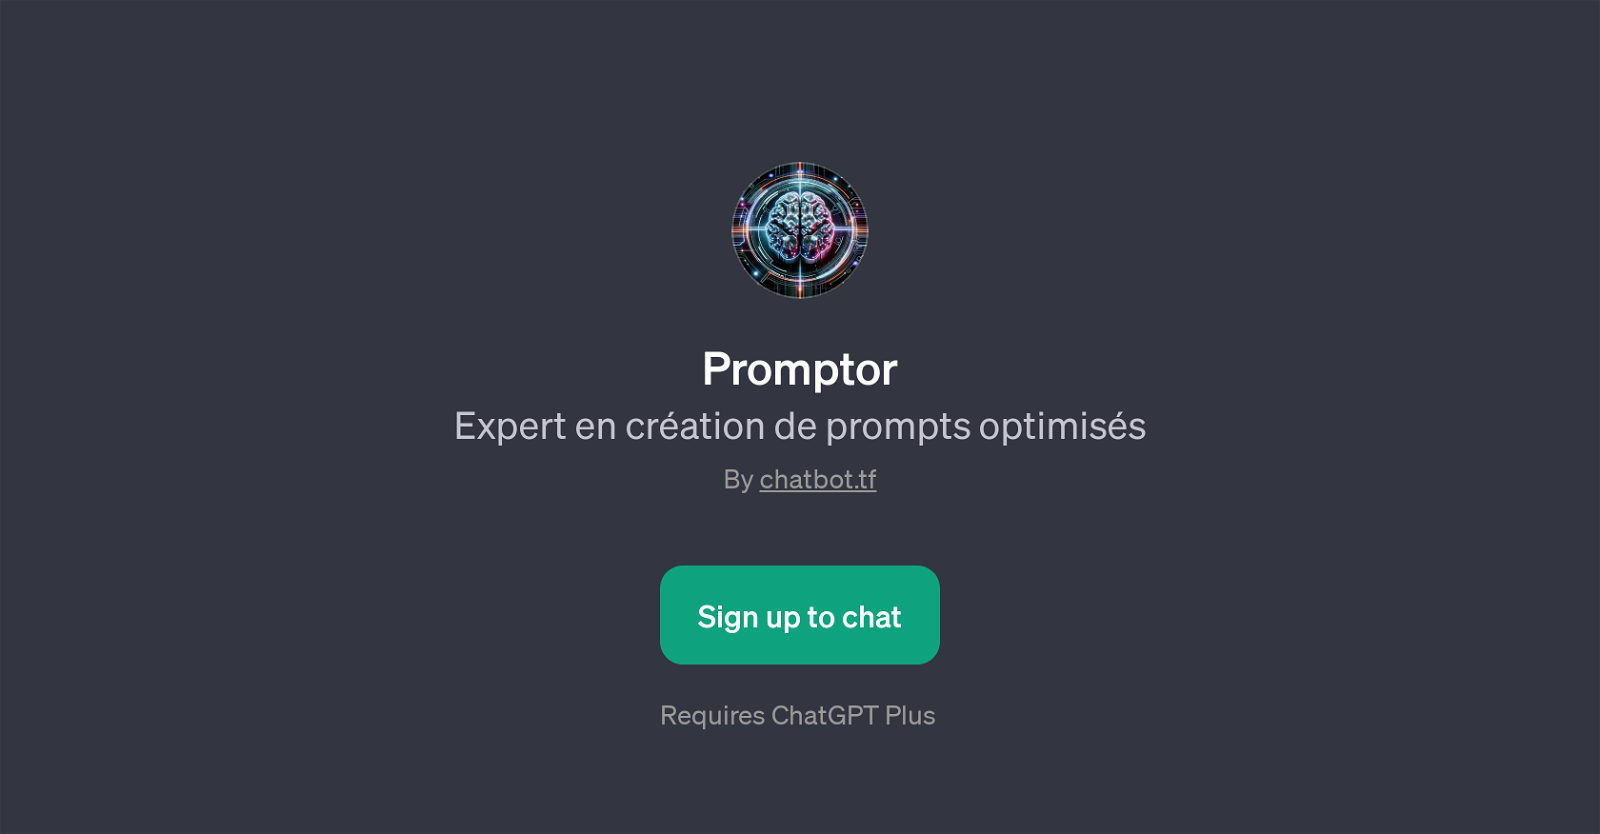 Promptor website